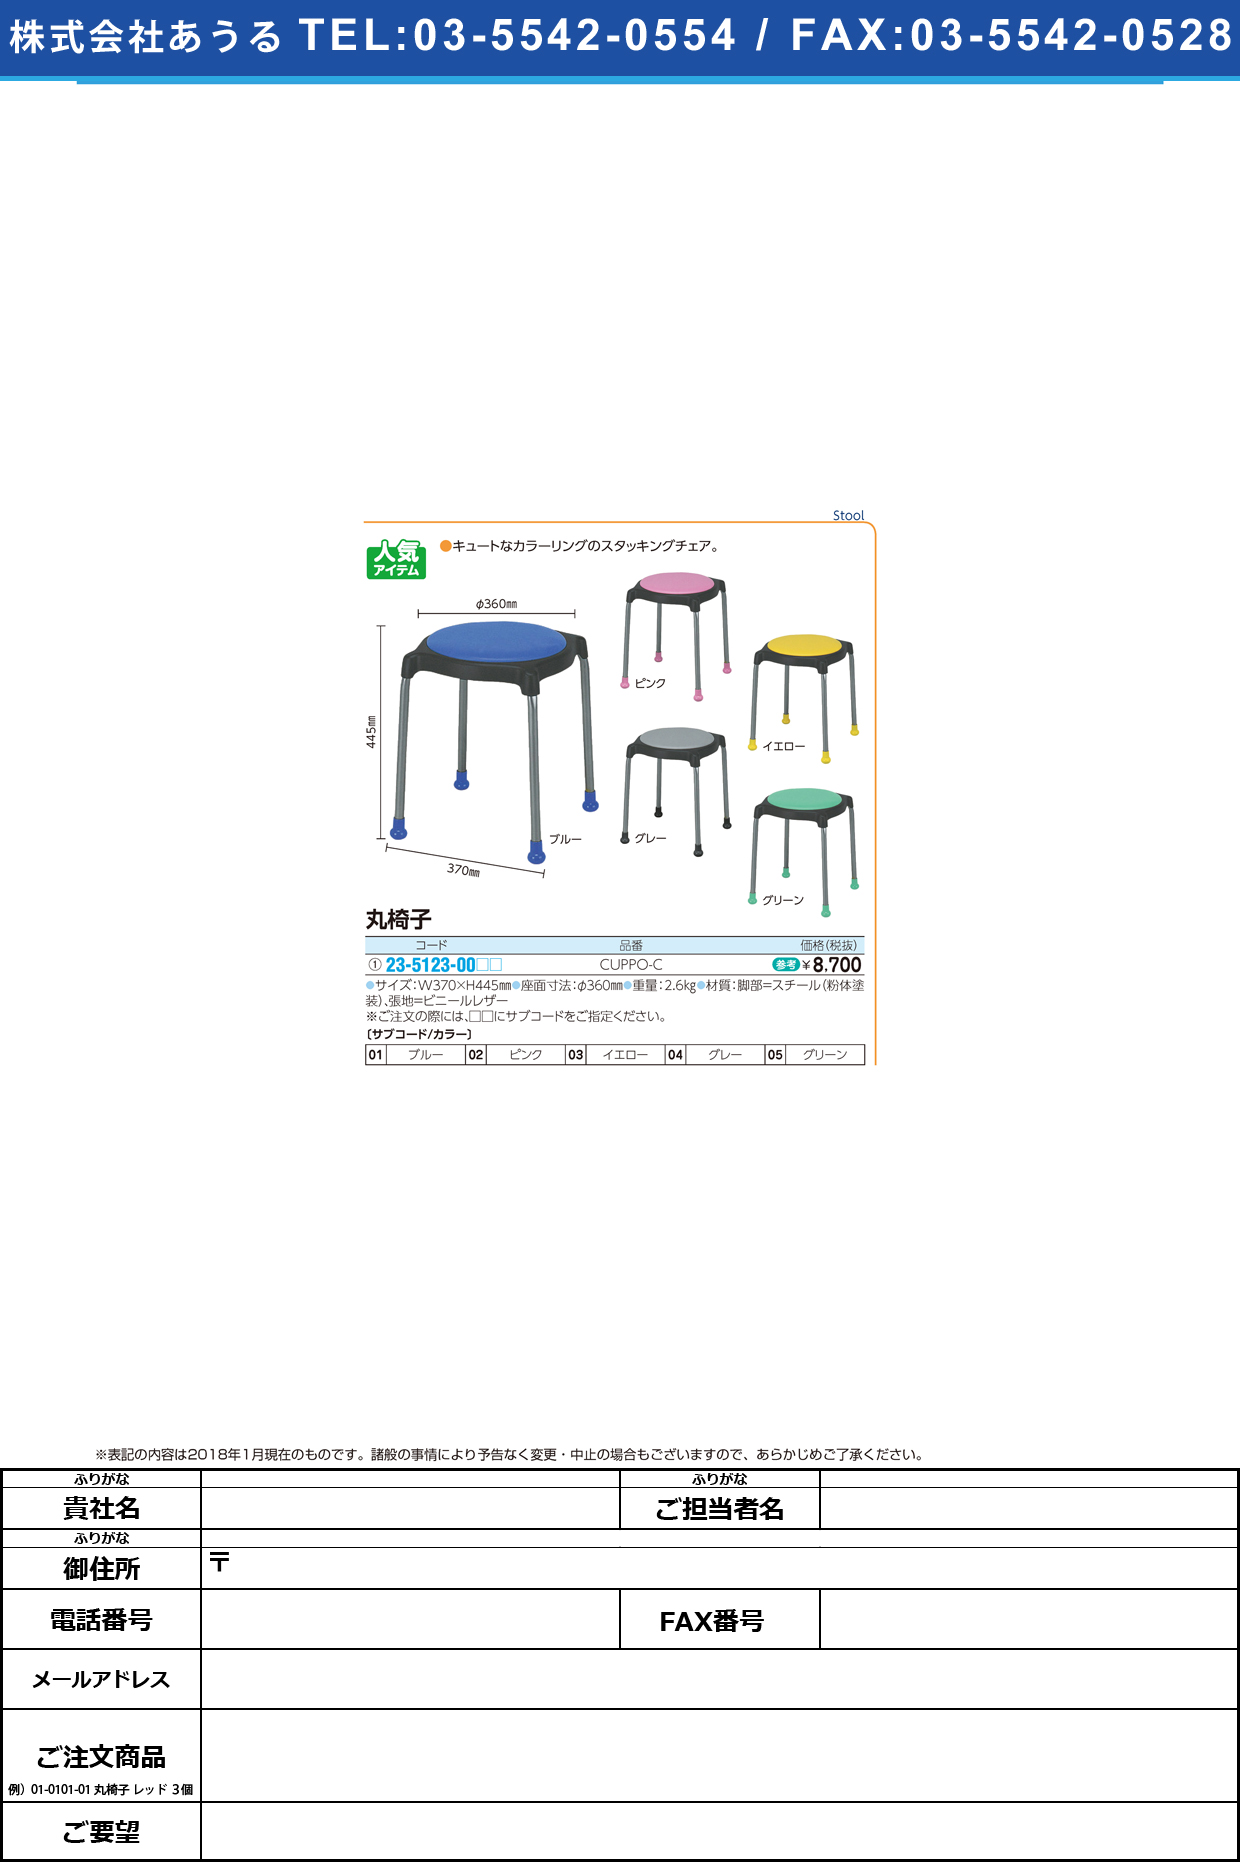 (23-5123-00)丸椅子 CUPPO-C(ﾚｻﾞｰ) ﾏﾙｲｽ ピンク【1台単位】【2019年カタログ商品】